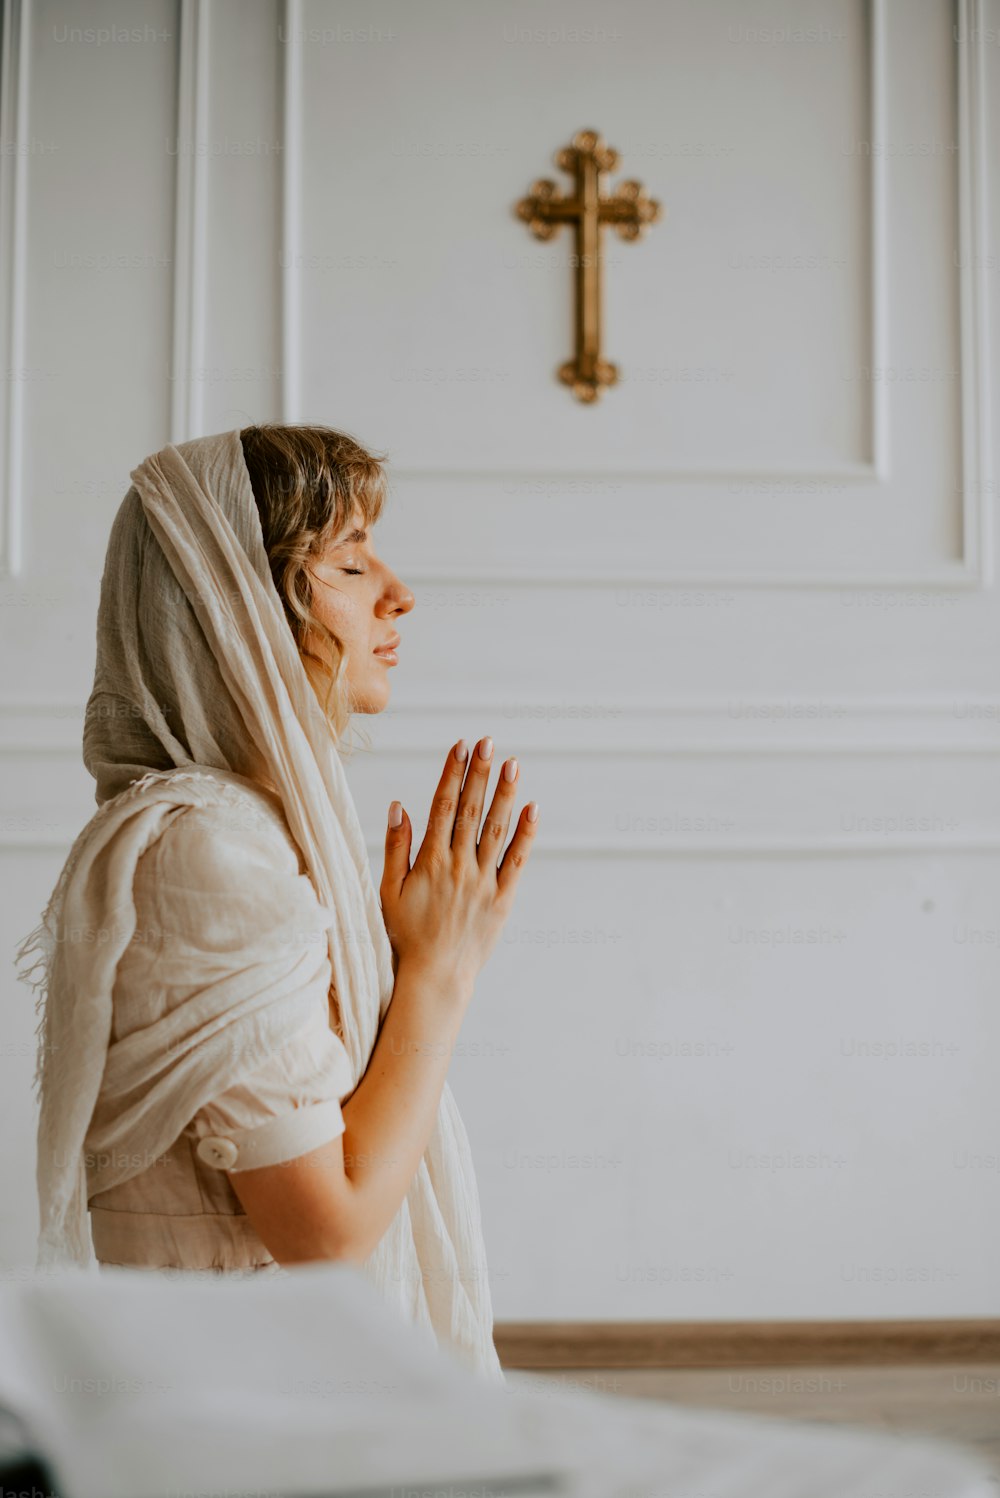 Una mujer con una túnica blanca está rezando